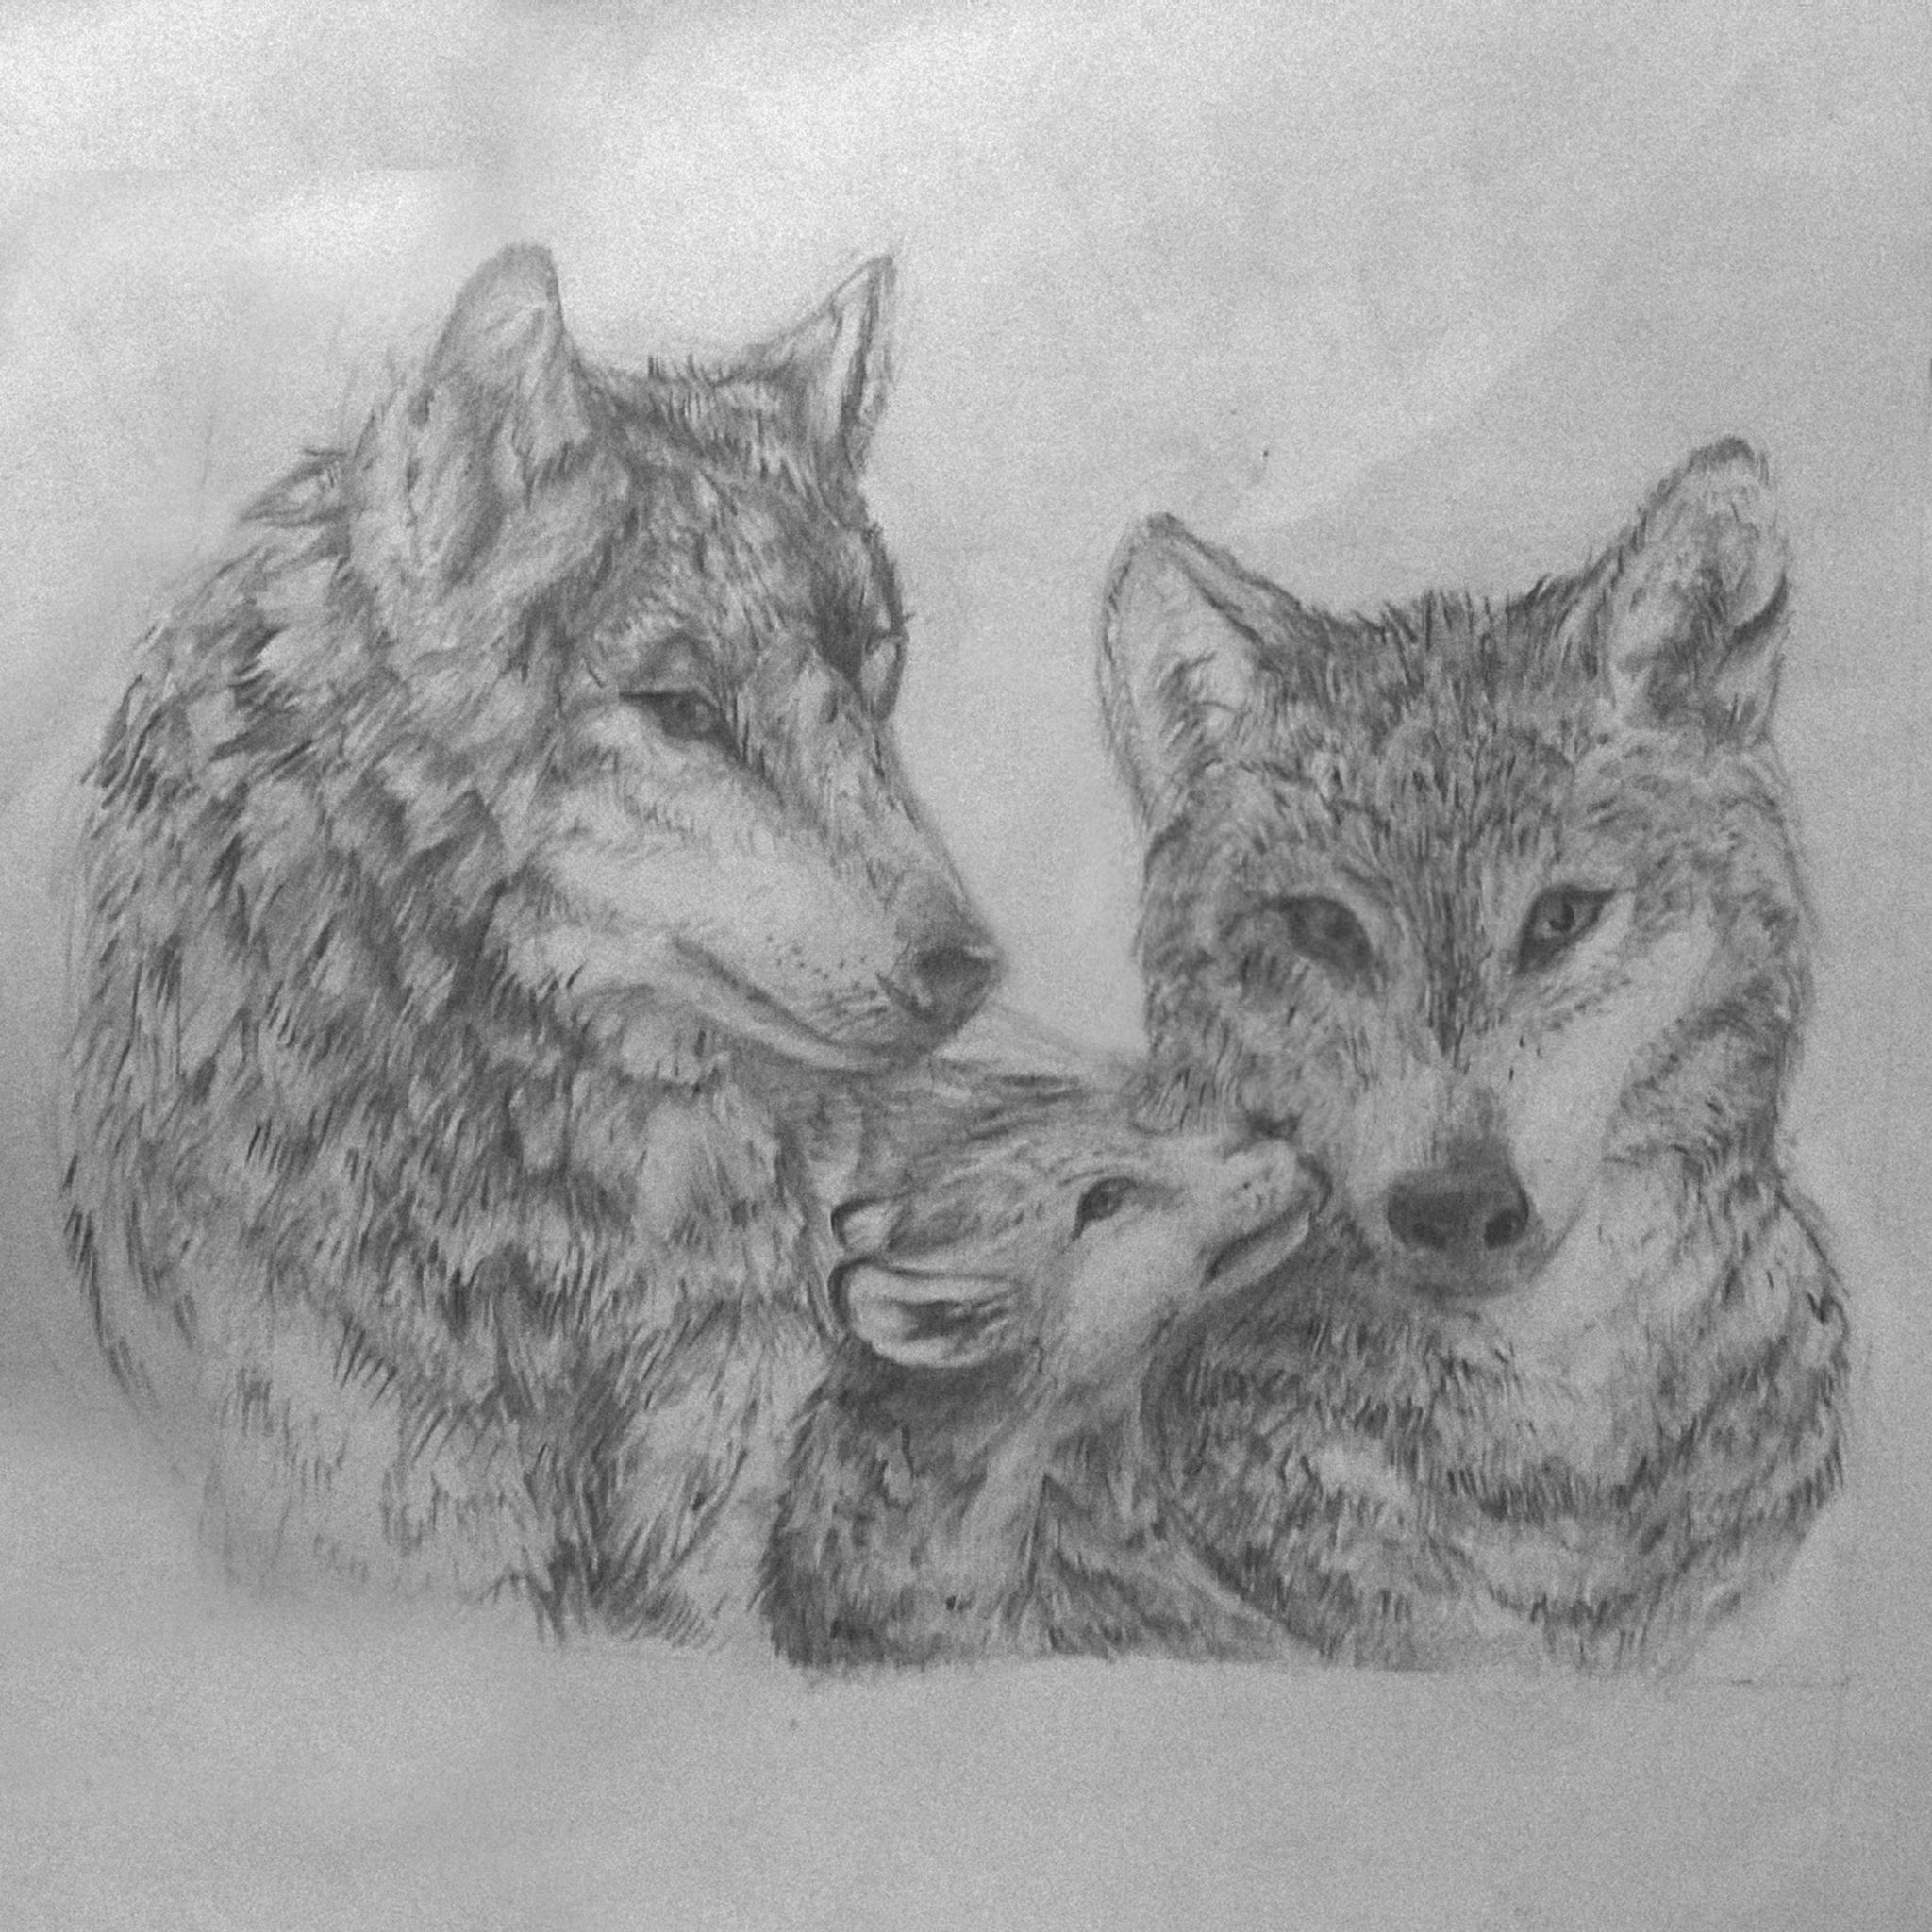 Familia de lobos, ilustración comisionada. — Steemit